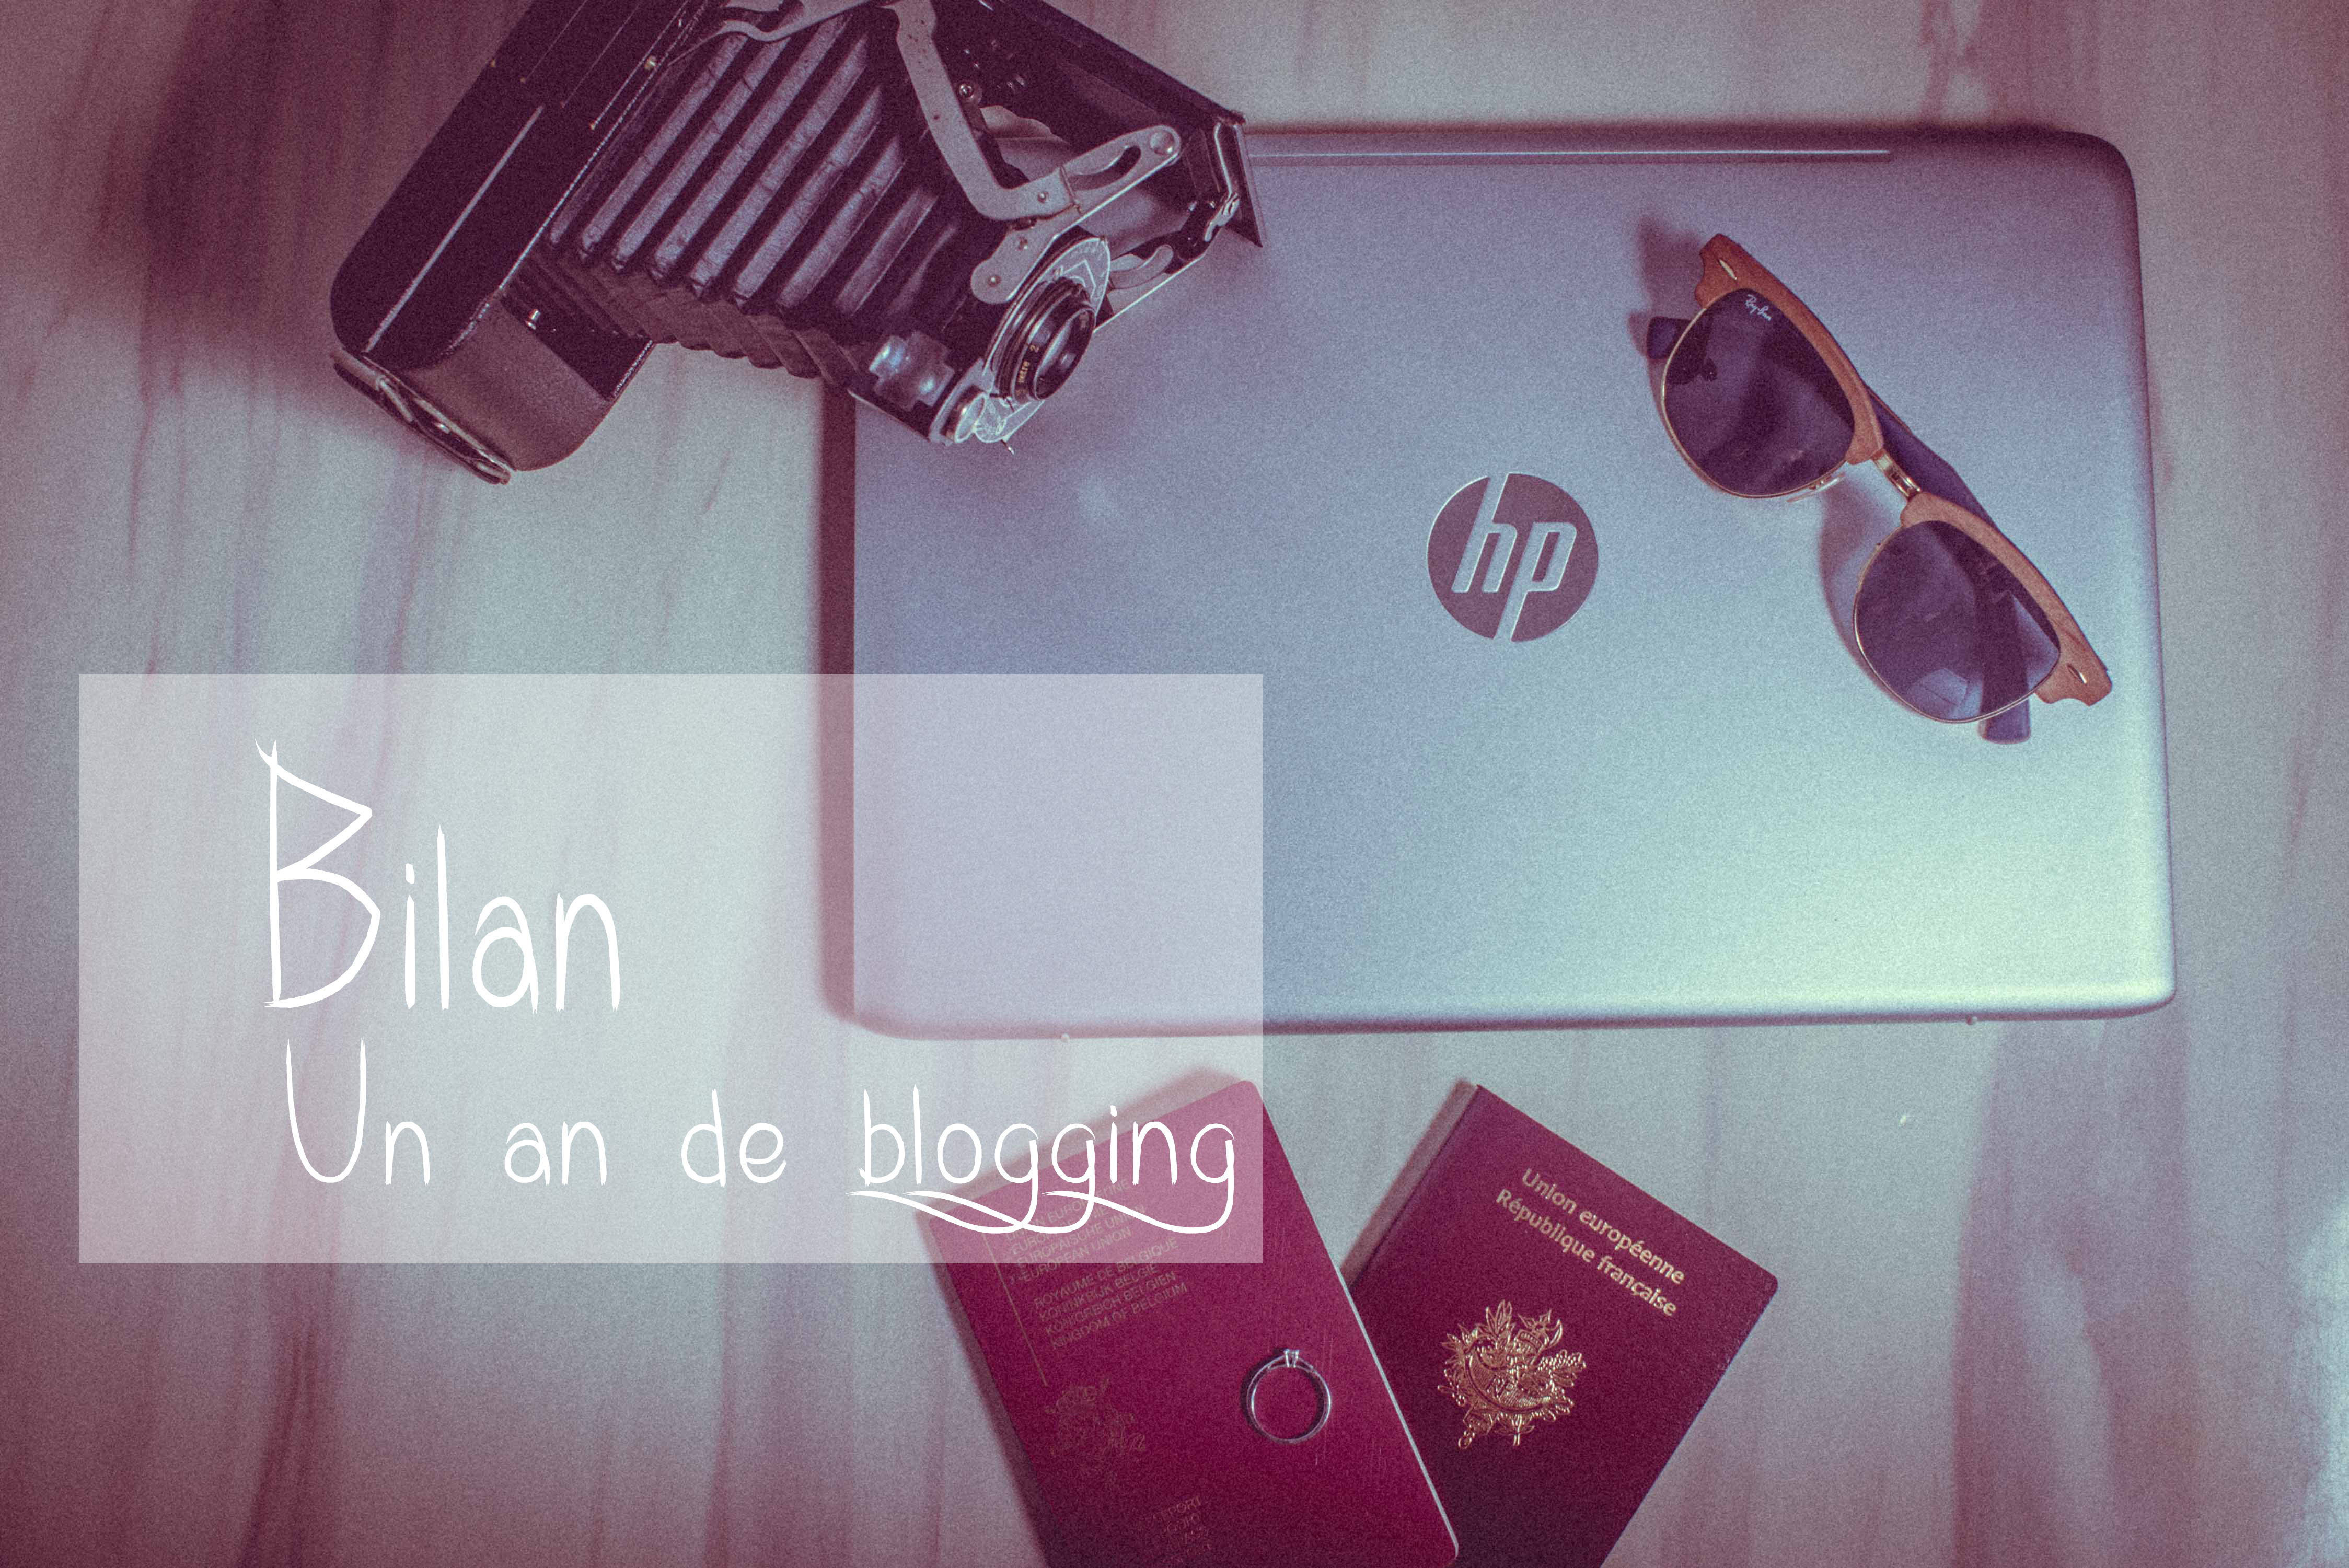 bilan un an de blogging blog voyage blogvoyage icietlabas